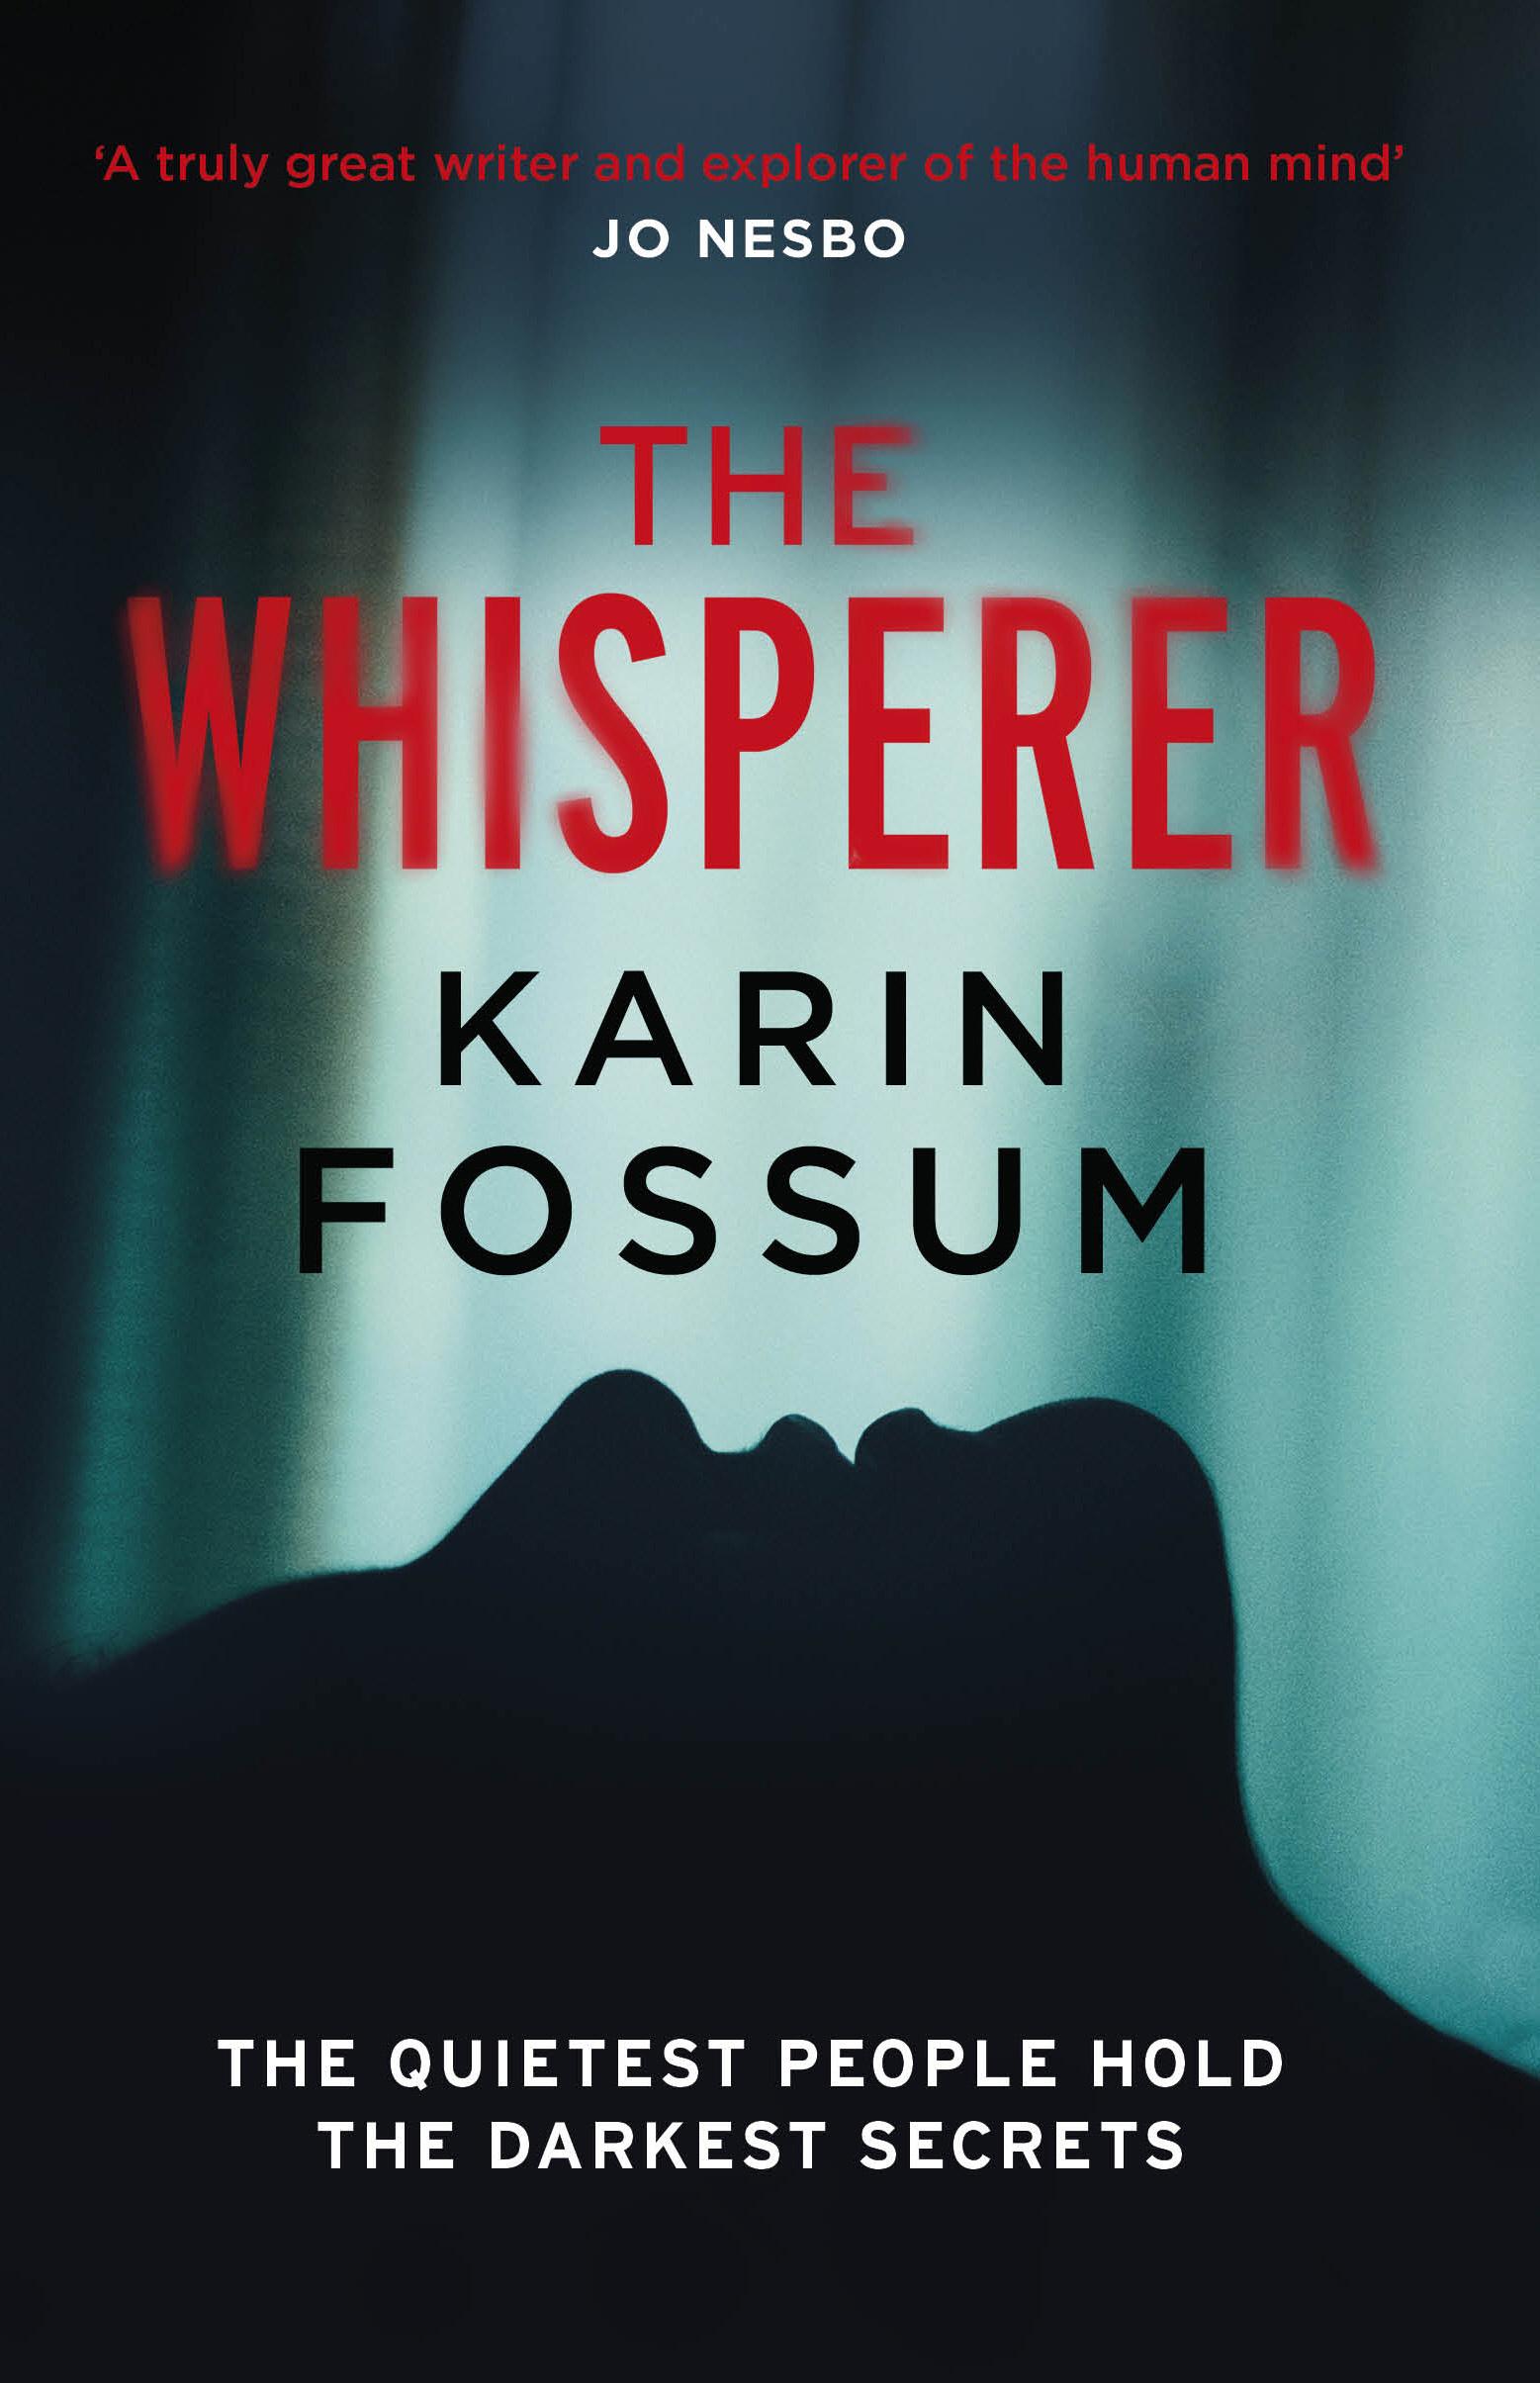 Whisperer - Karin Fossum